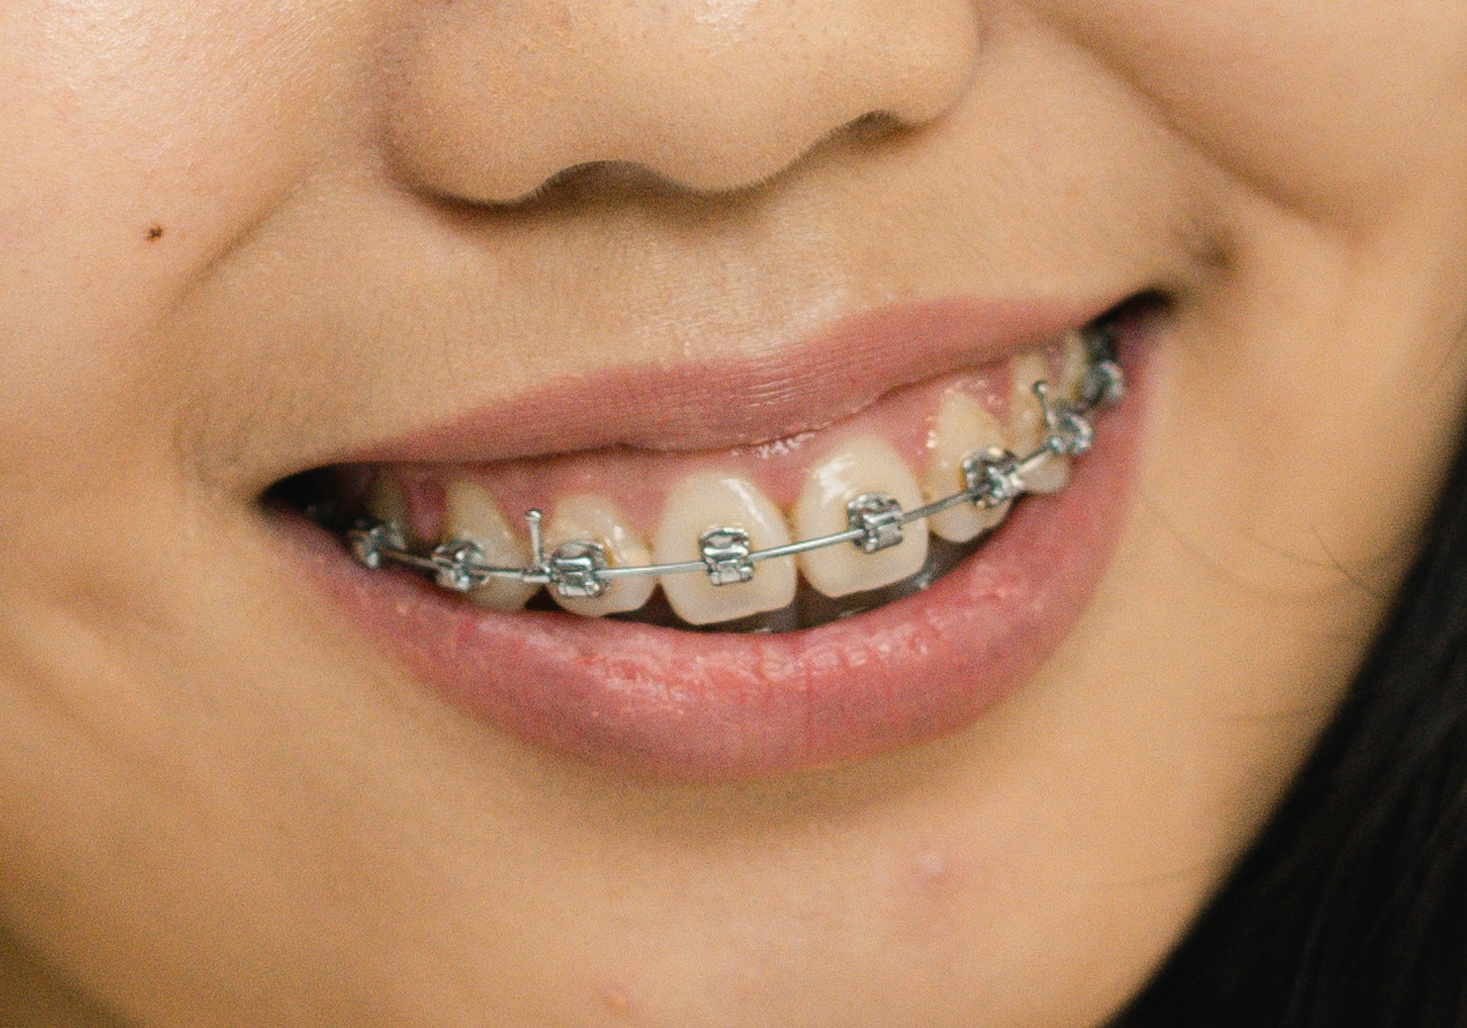 Metal vs Ceramic braces